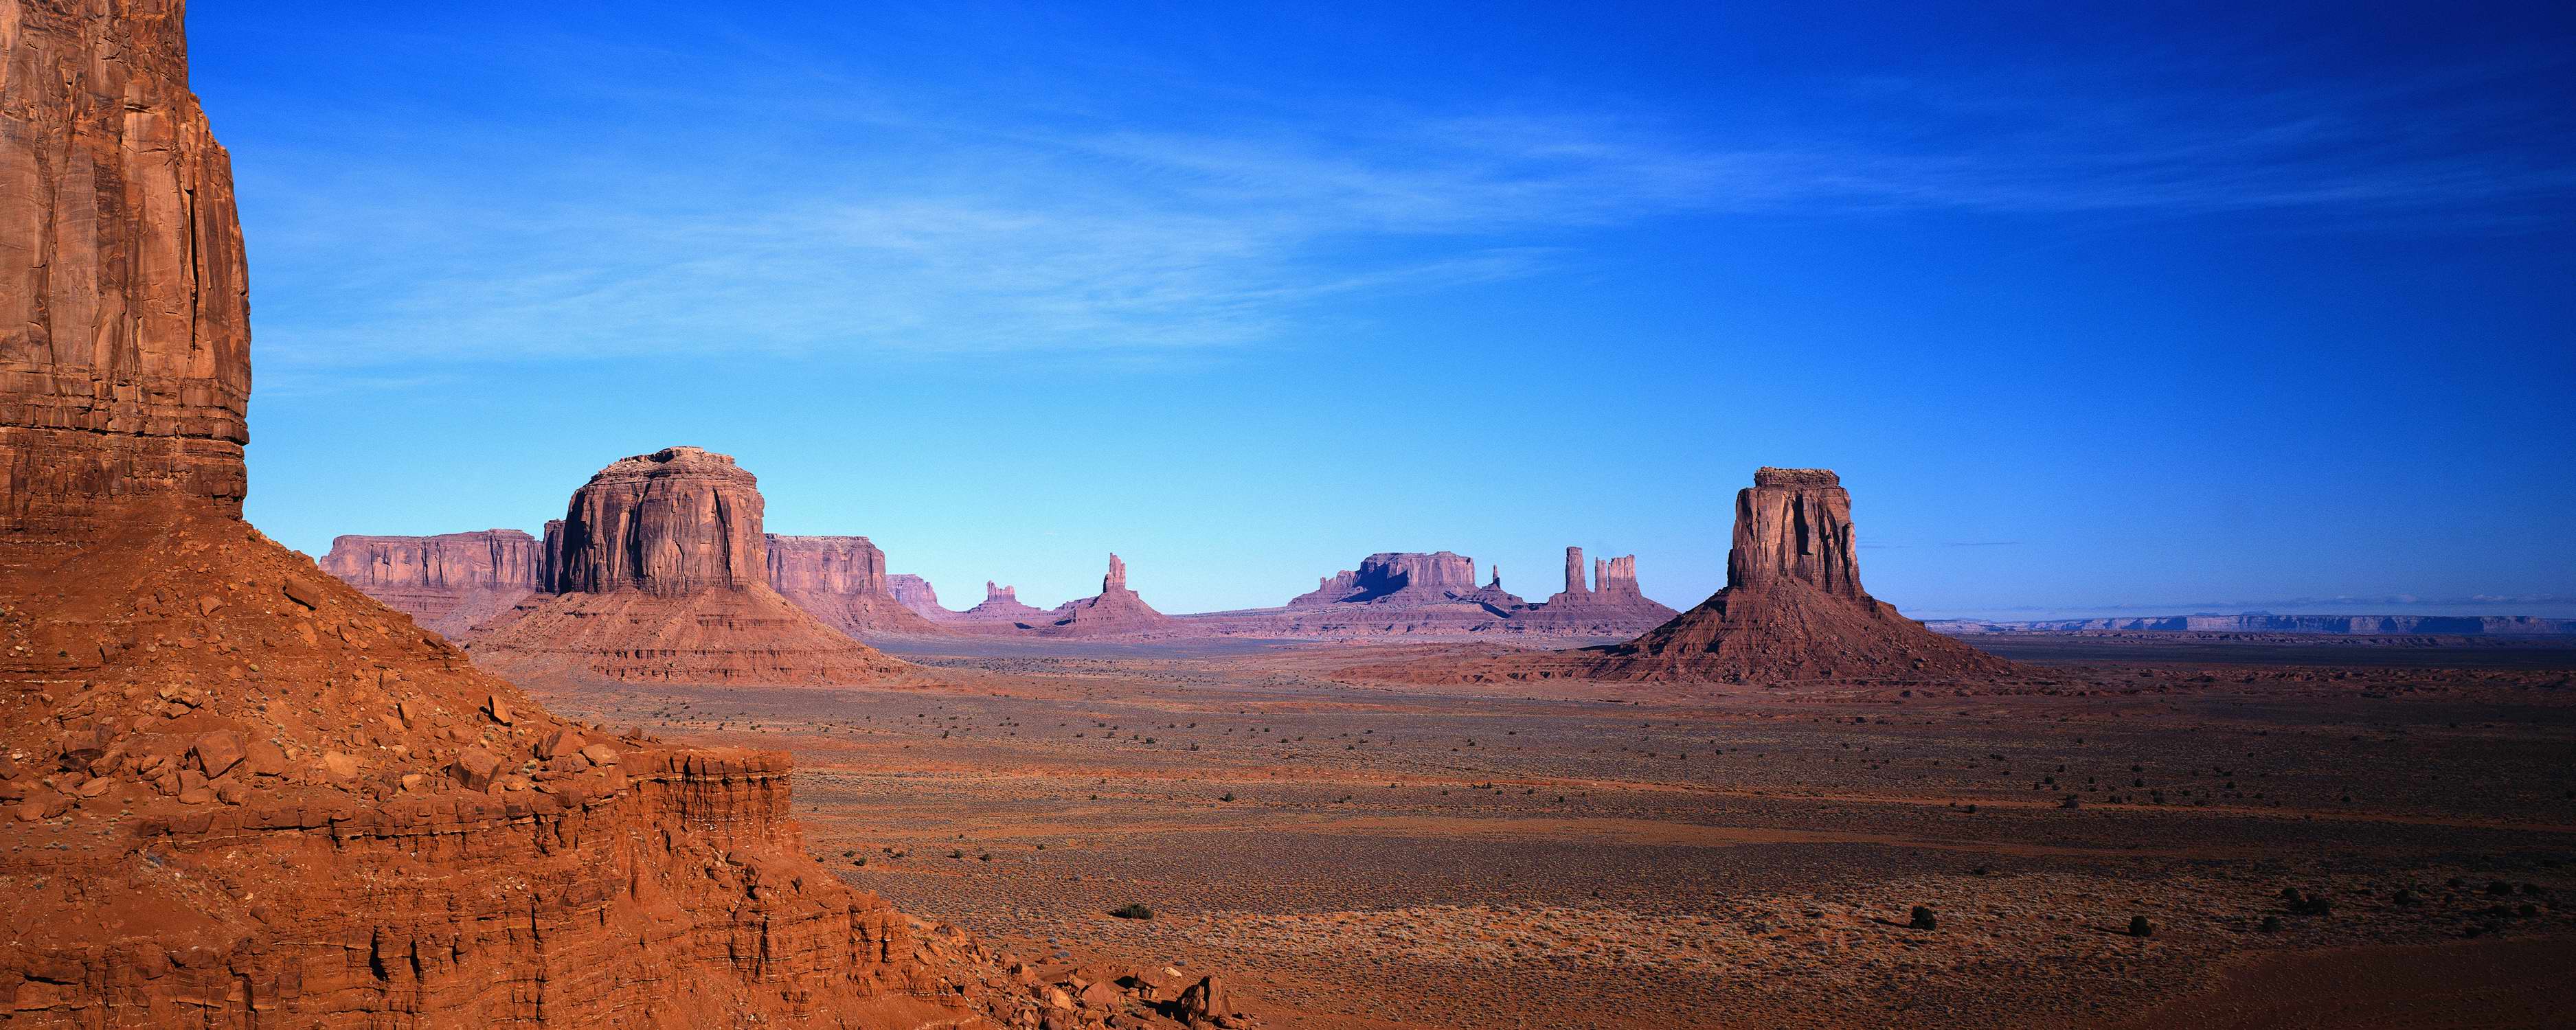 Wallpaper arizona, USA, mountains, desert, Monument Valley